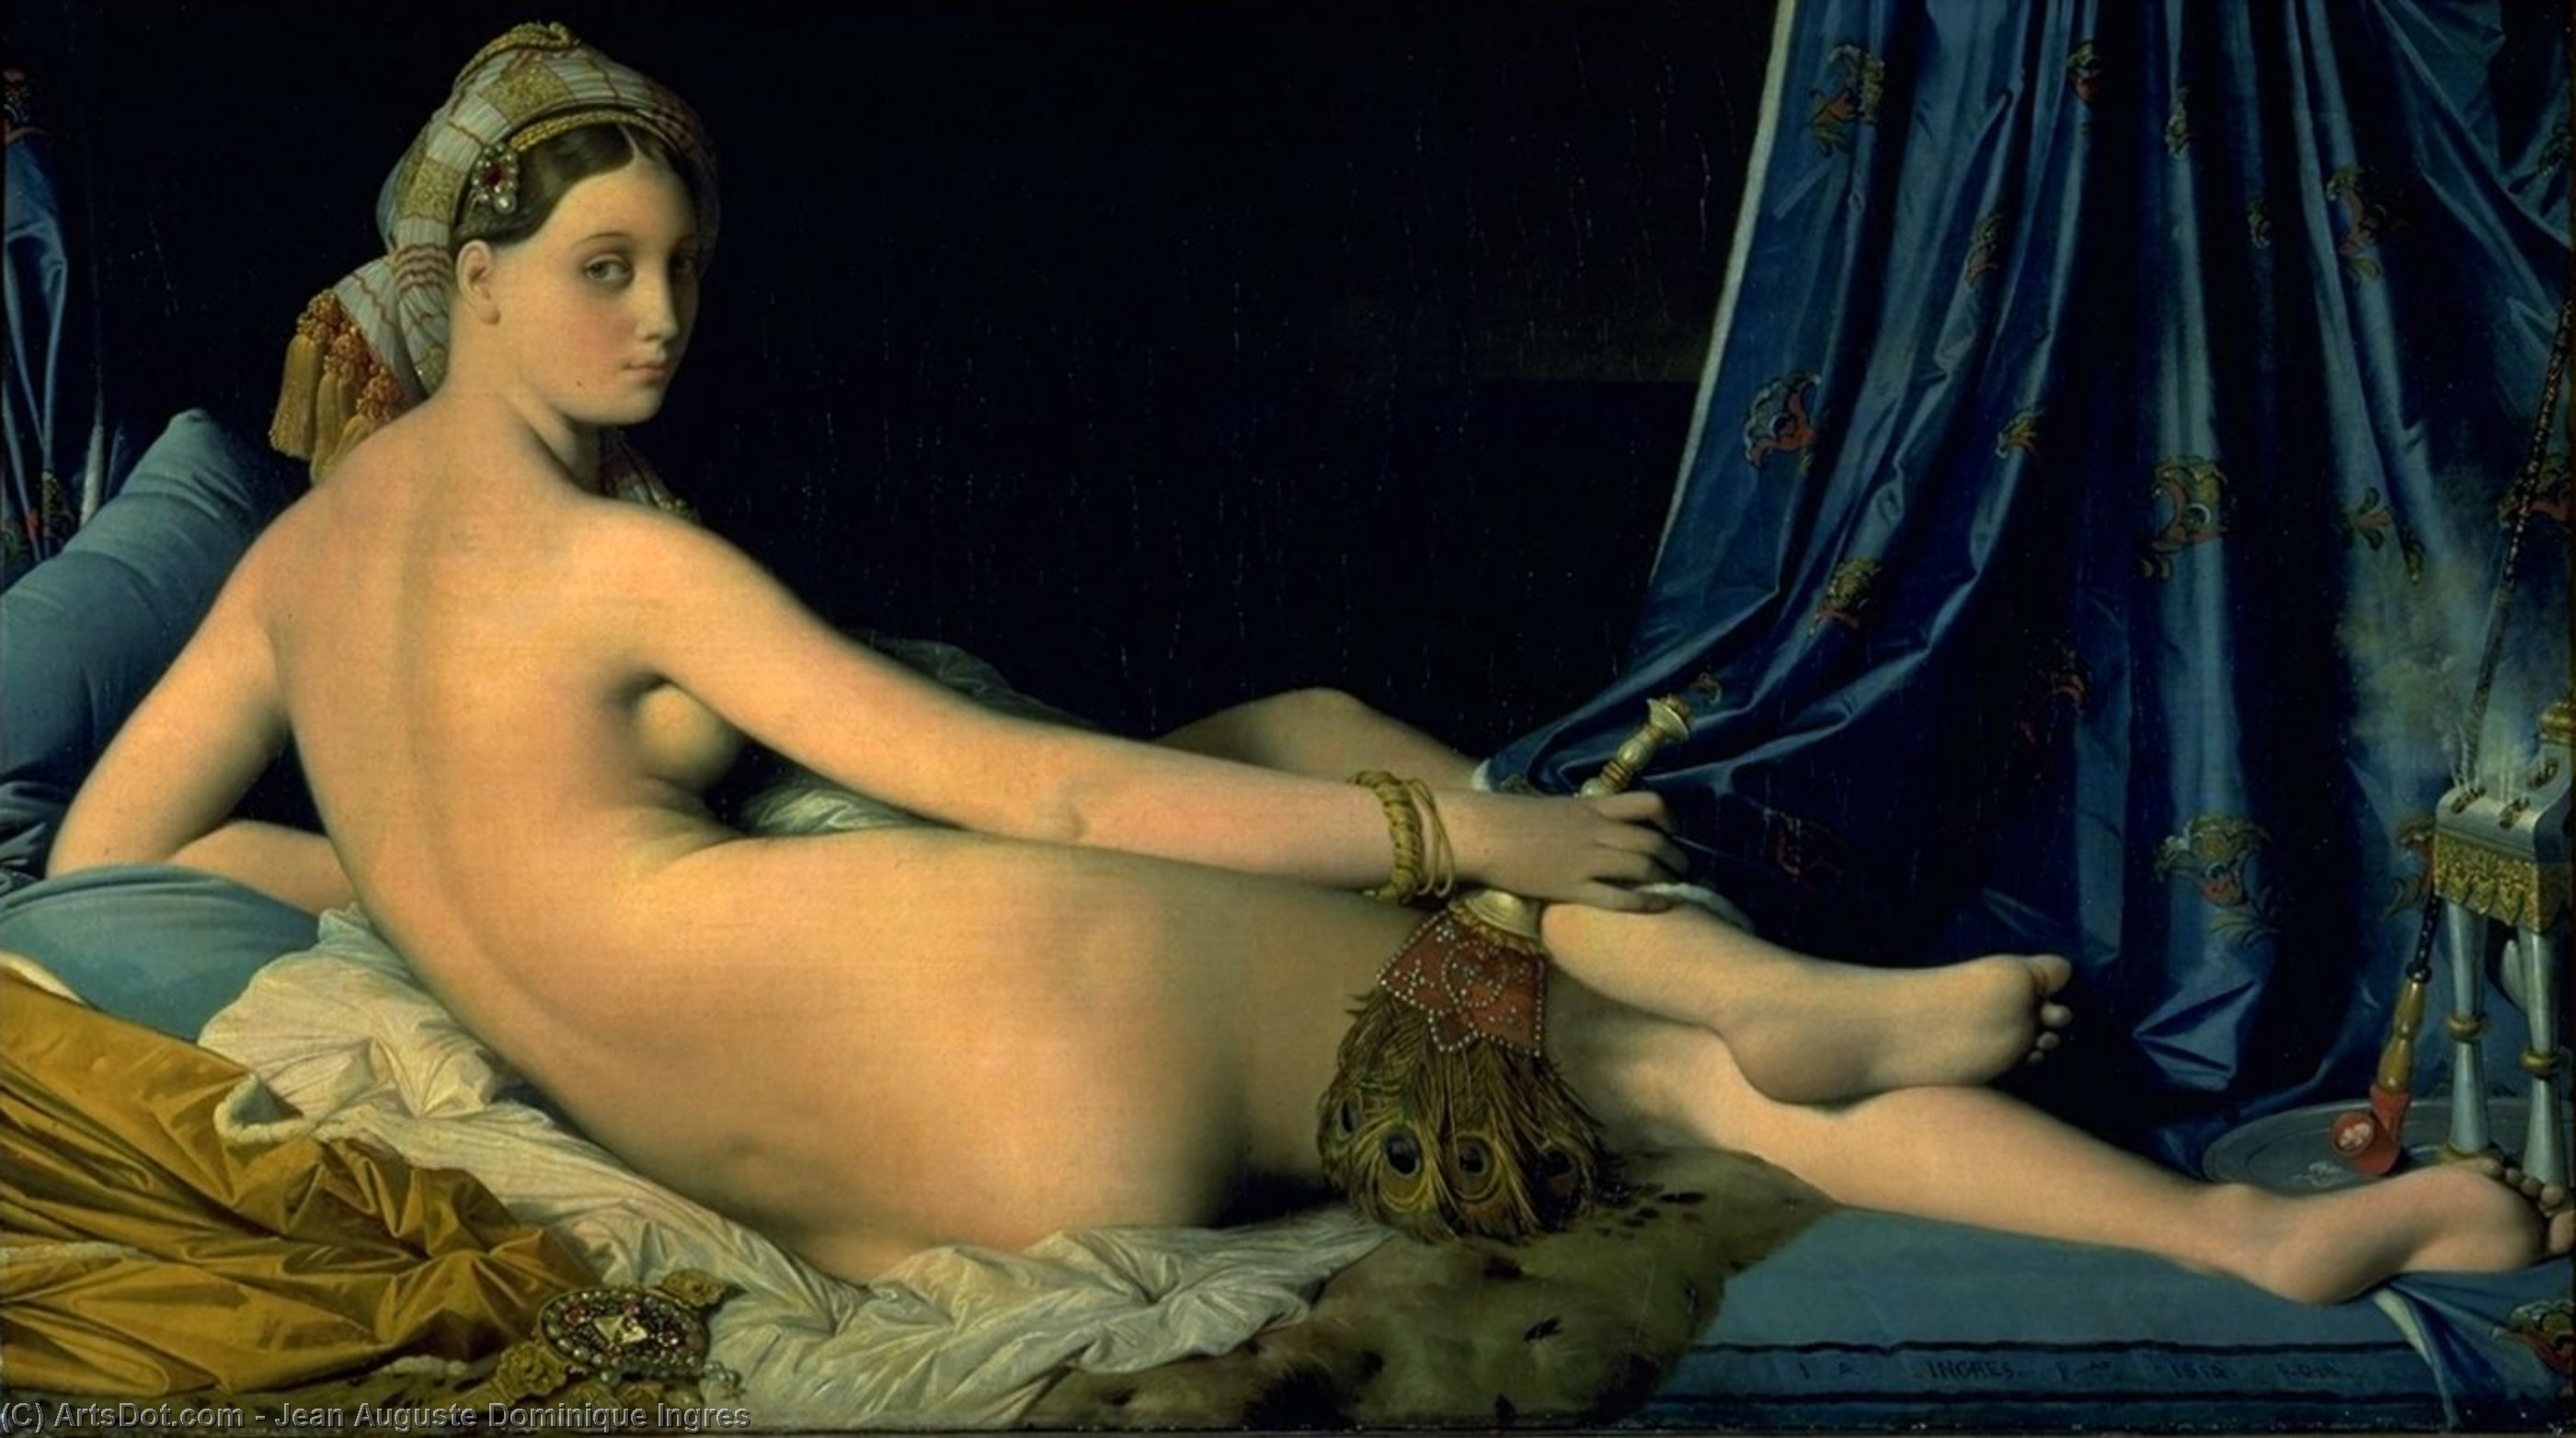 WikiOO.org - אנציקלופדיה לאמנויות יפות - ציור, יצירות אמנות Jean Auguste Dominique Ingres - Odalisk, louvre